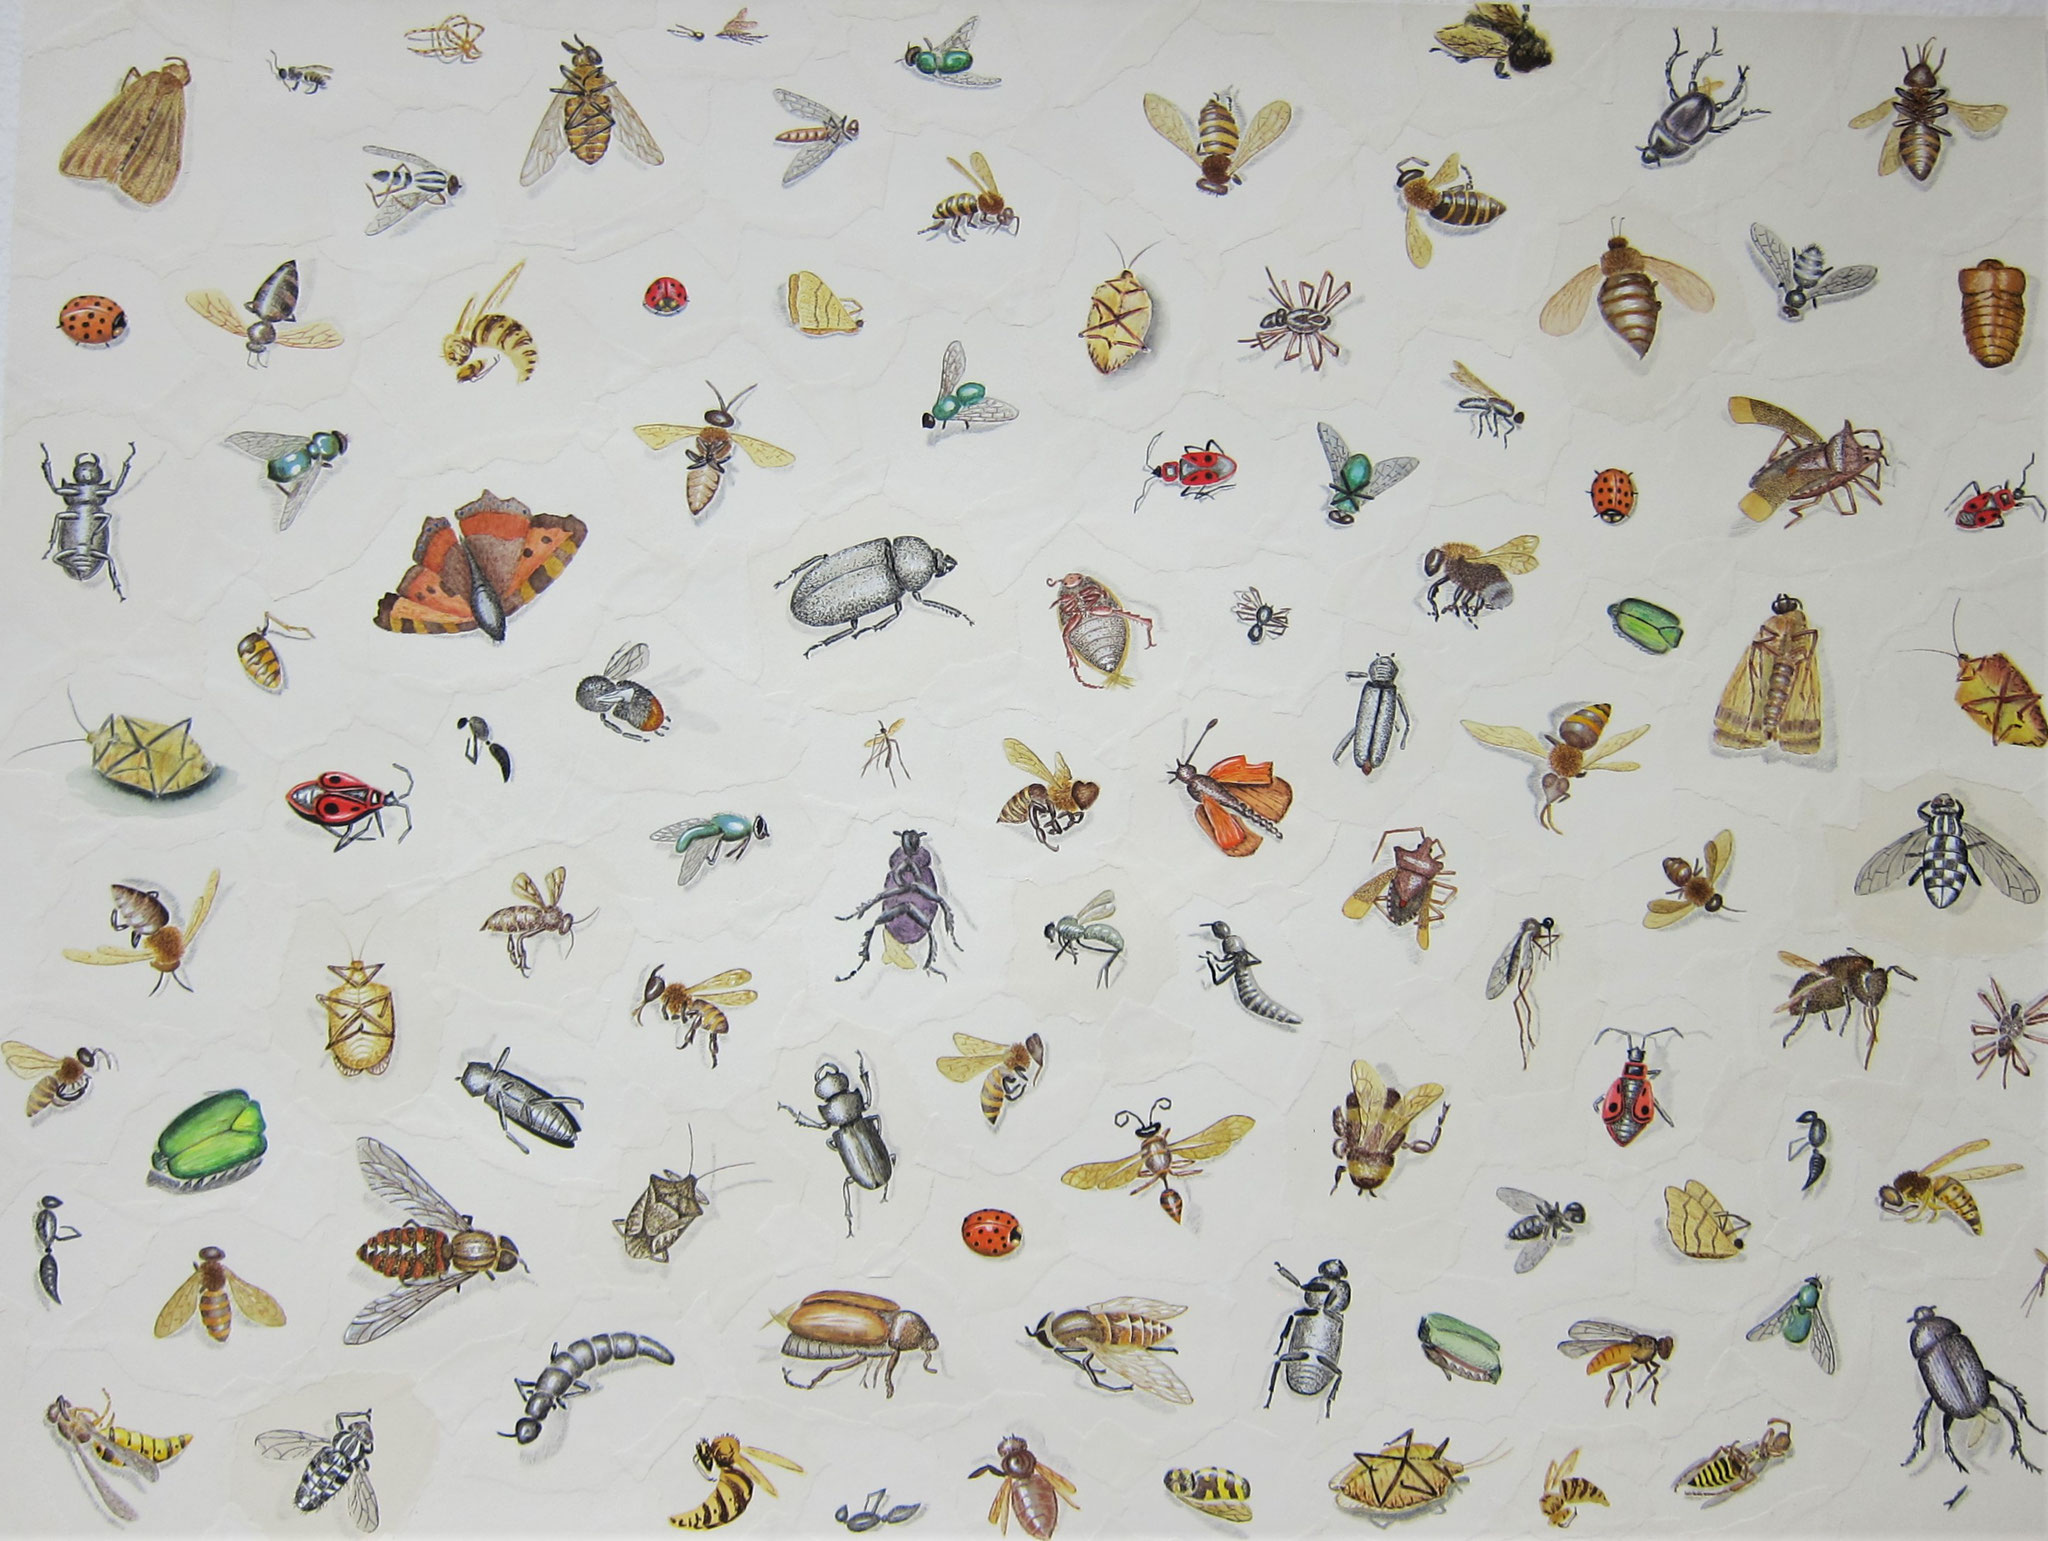 Kleine Wesen (Gesamtansicht); Aquarell, Tusche und Bleistift auf Papier; Montage aus 101 Einzelzeichnungen toter Insekten; 60 x 80 cm, 2021